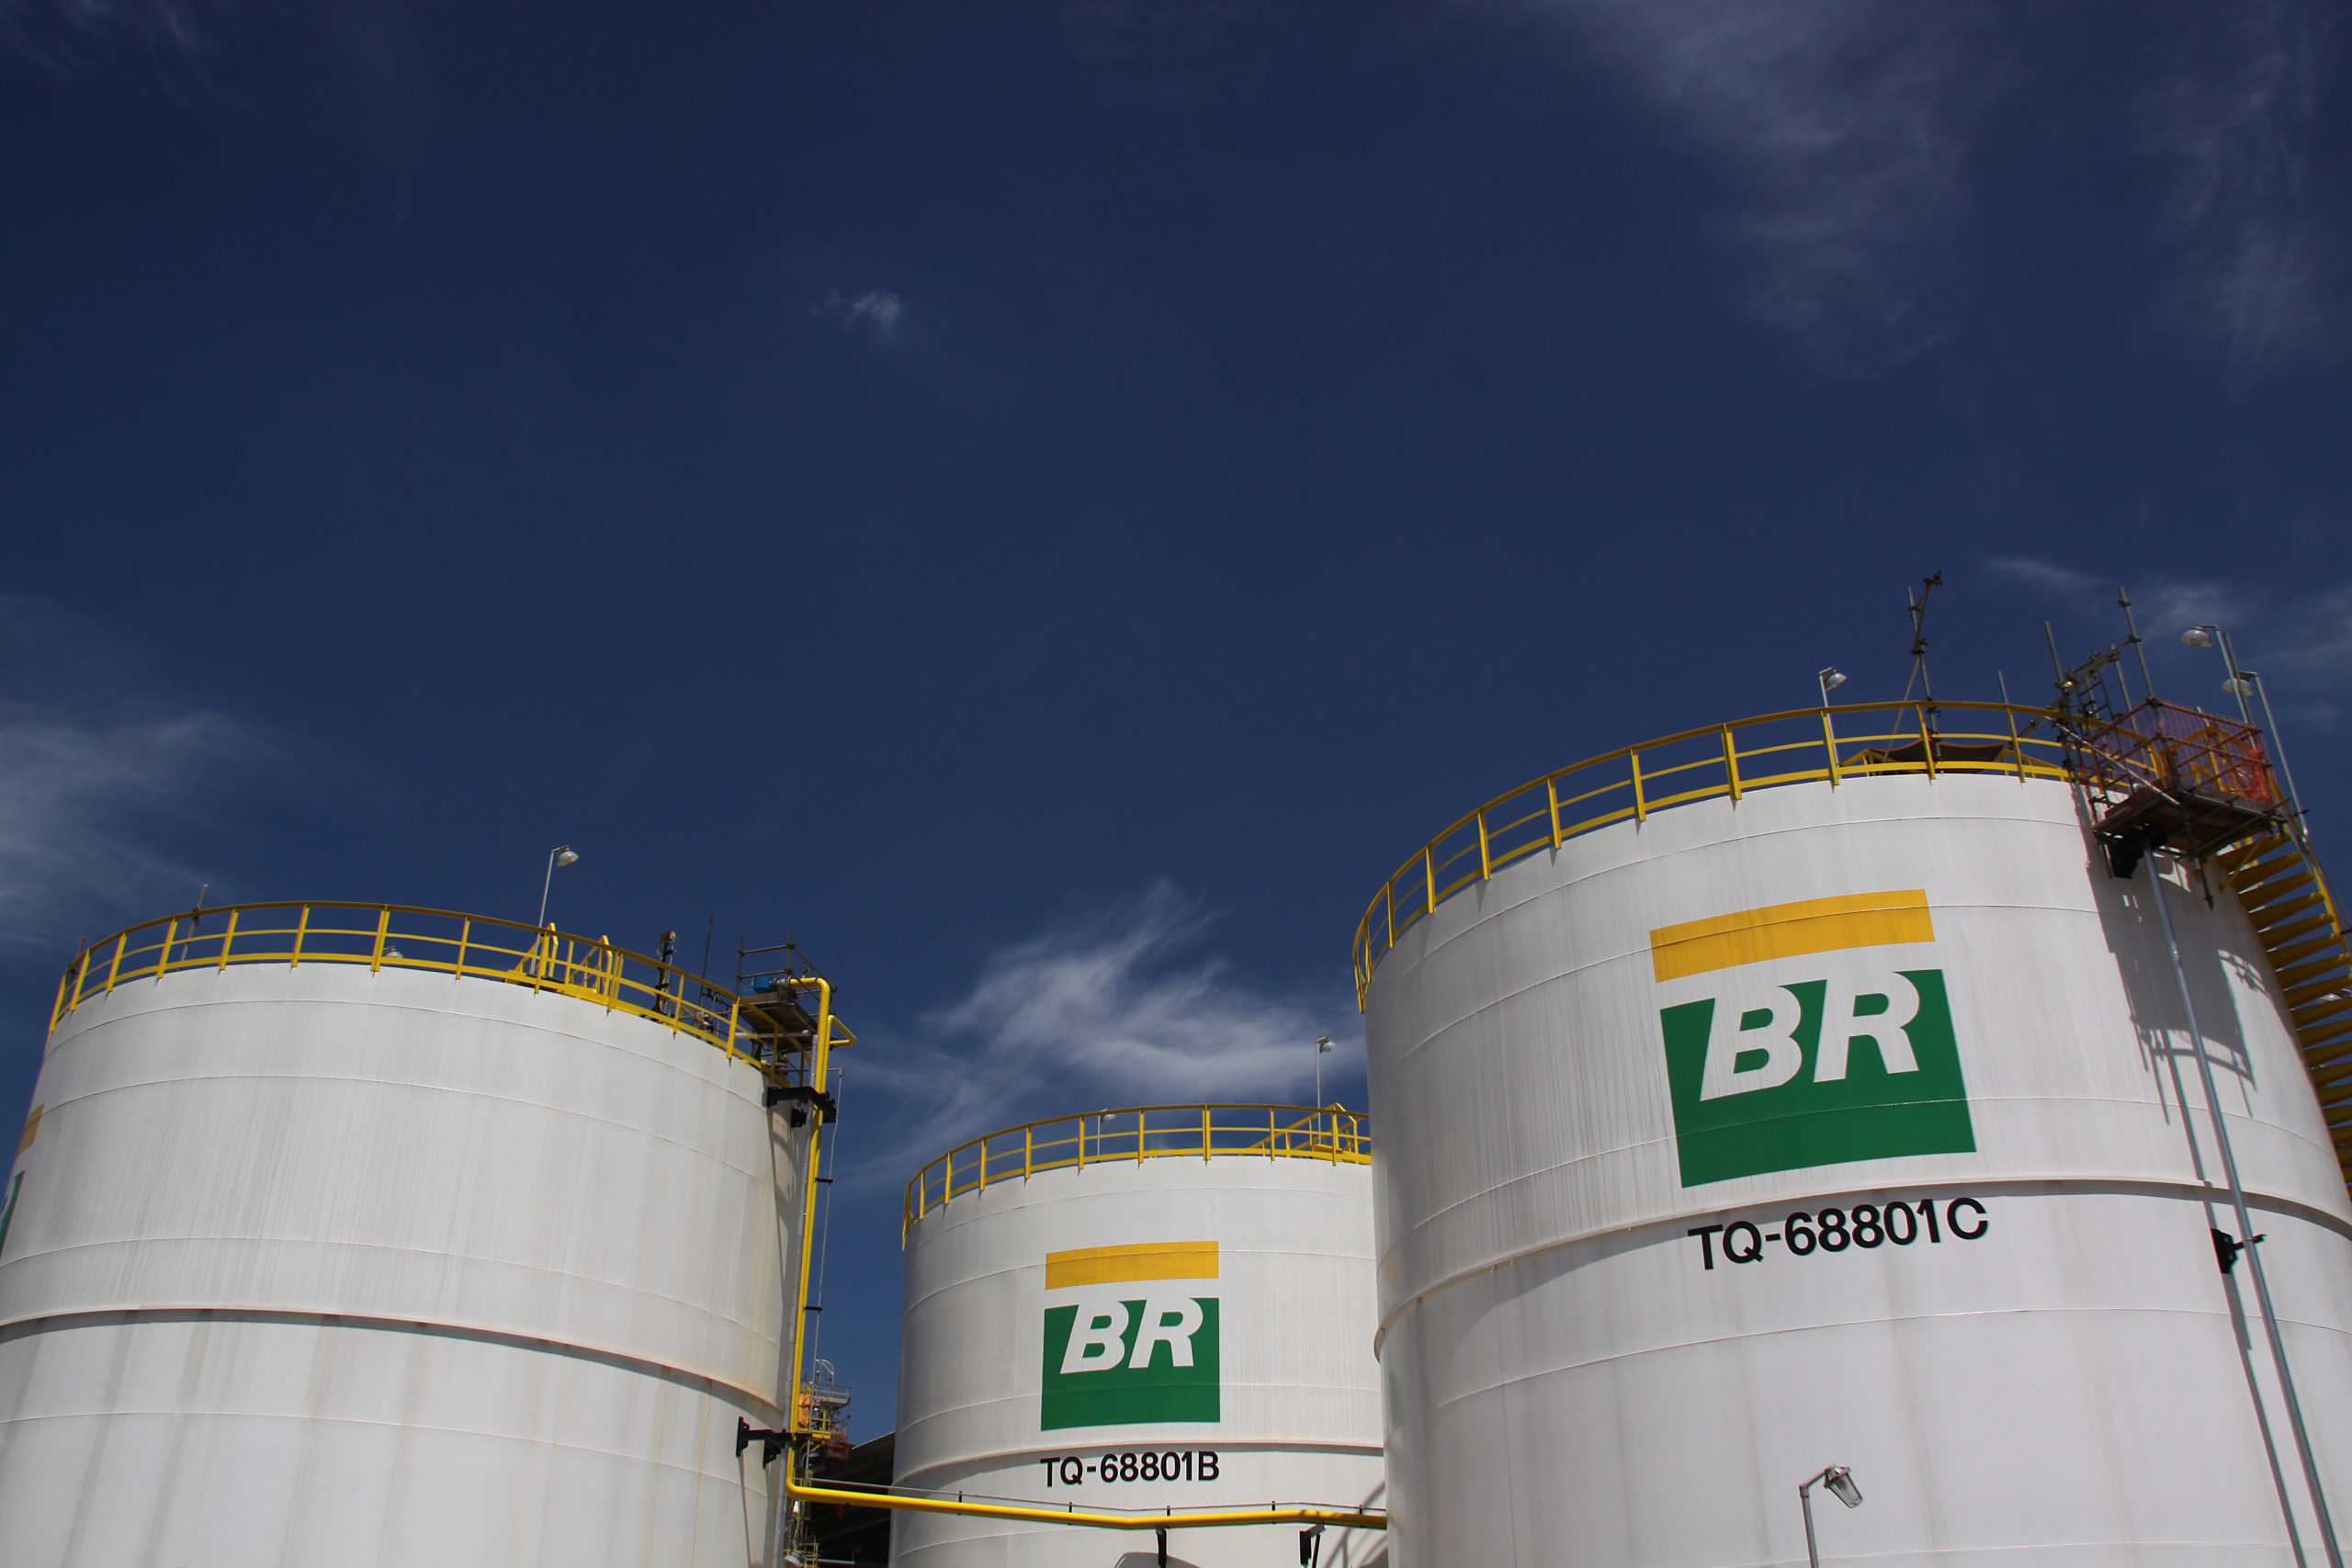 Aumento da mistura de biodiesel e dos estoques de diesel em discussão. Na imagem, tanques da Refinaria Henrique Lage -- Revap (Foto: Geraldo Falcão/Agência Petrobras)